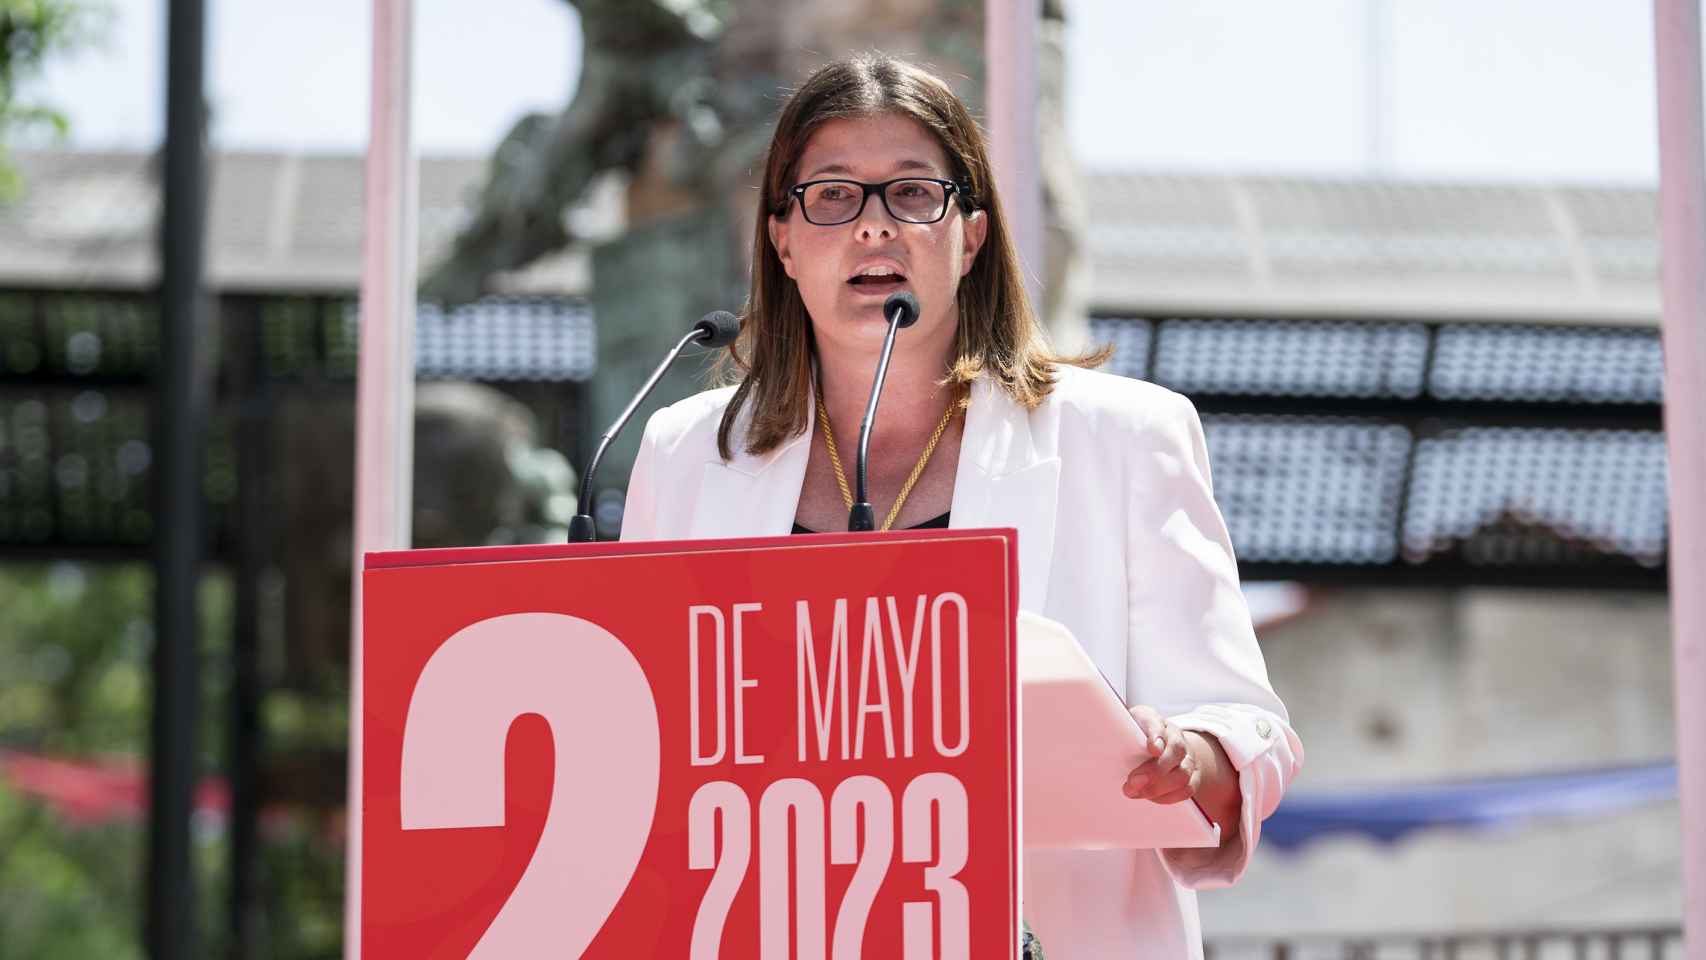 La alcaldesa de Móstoles, Noelia Posse, en una imagen reciente.